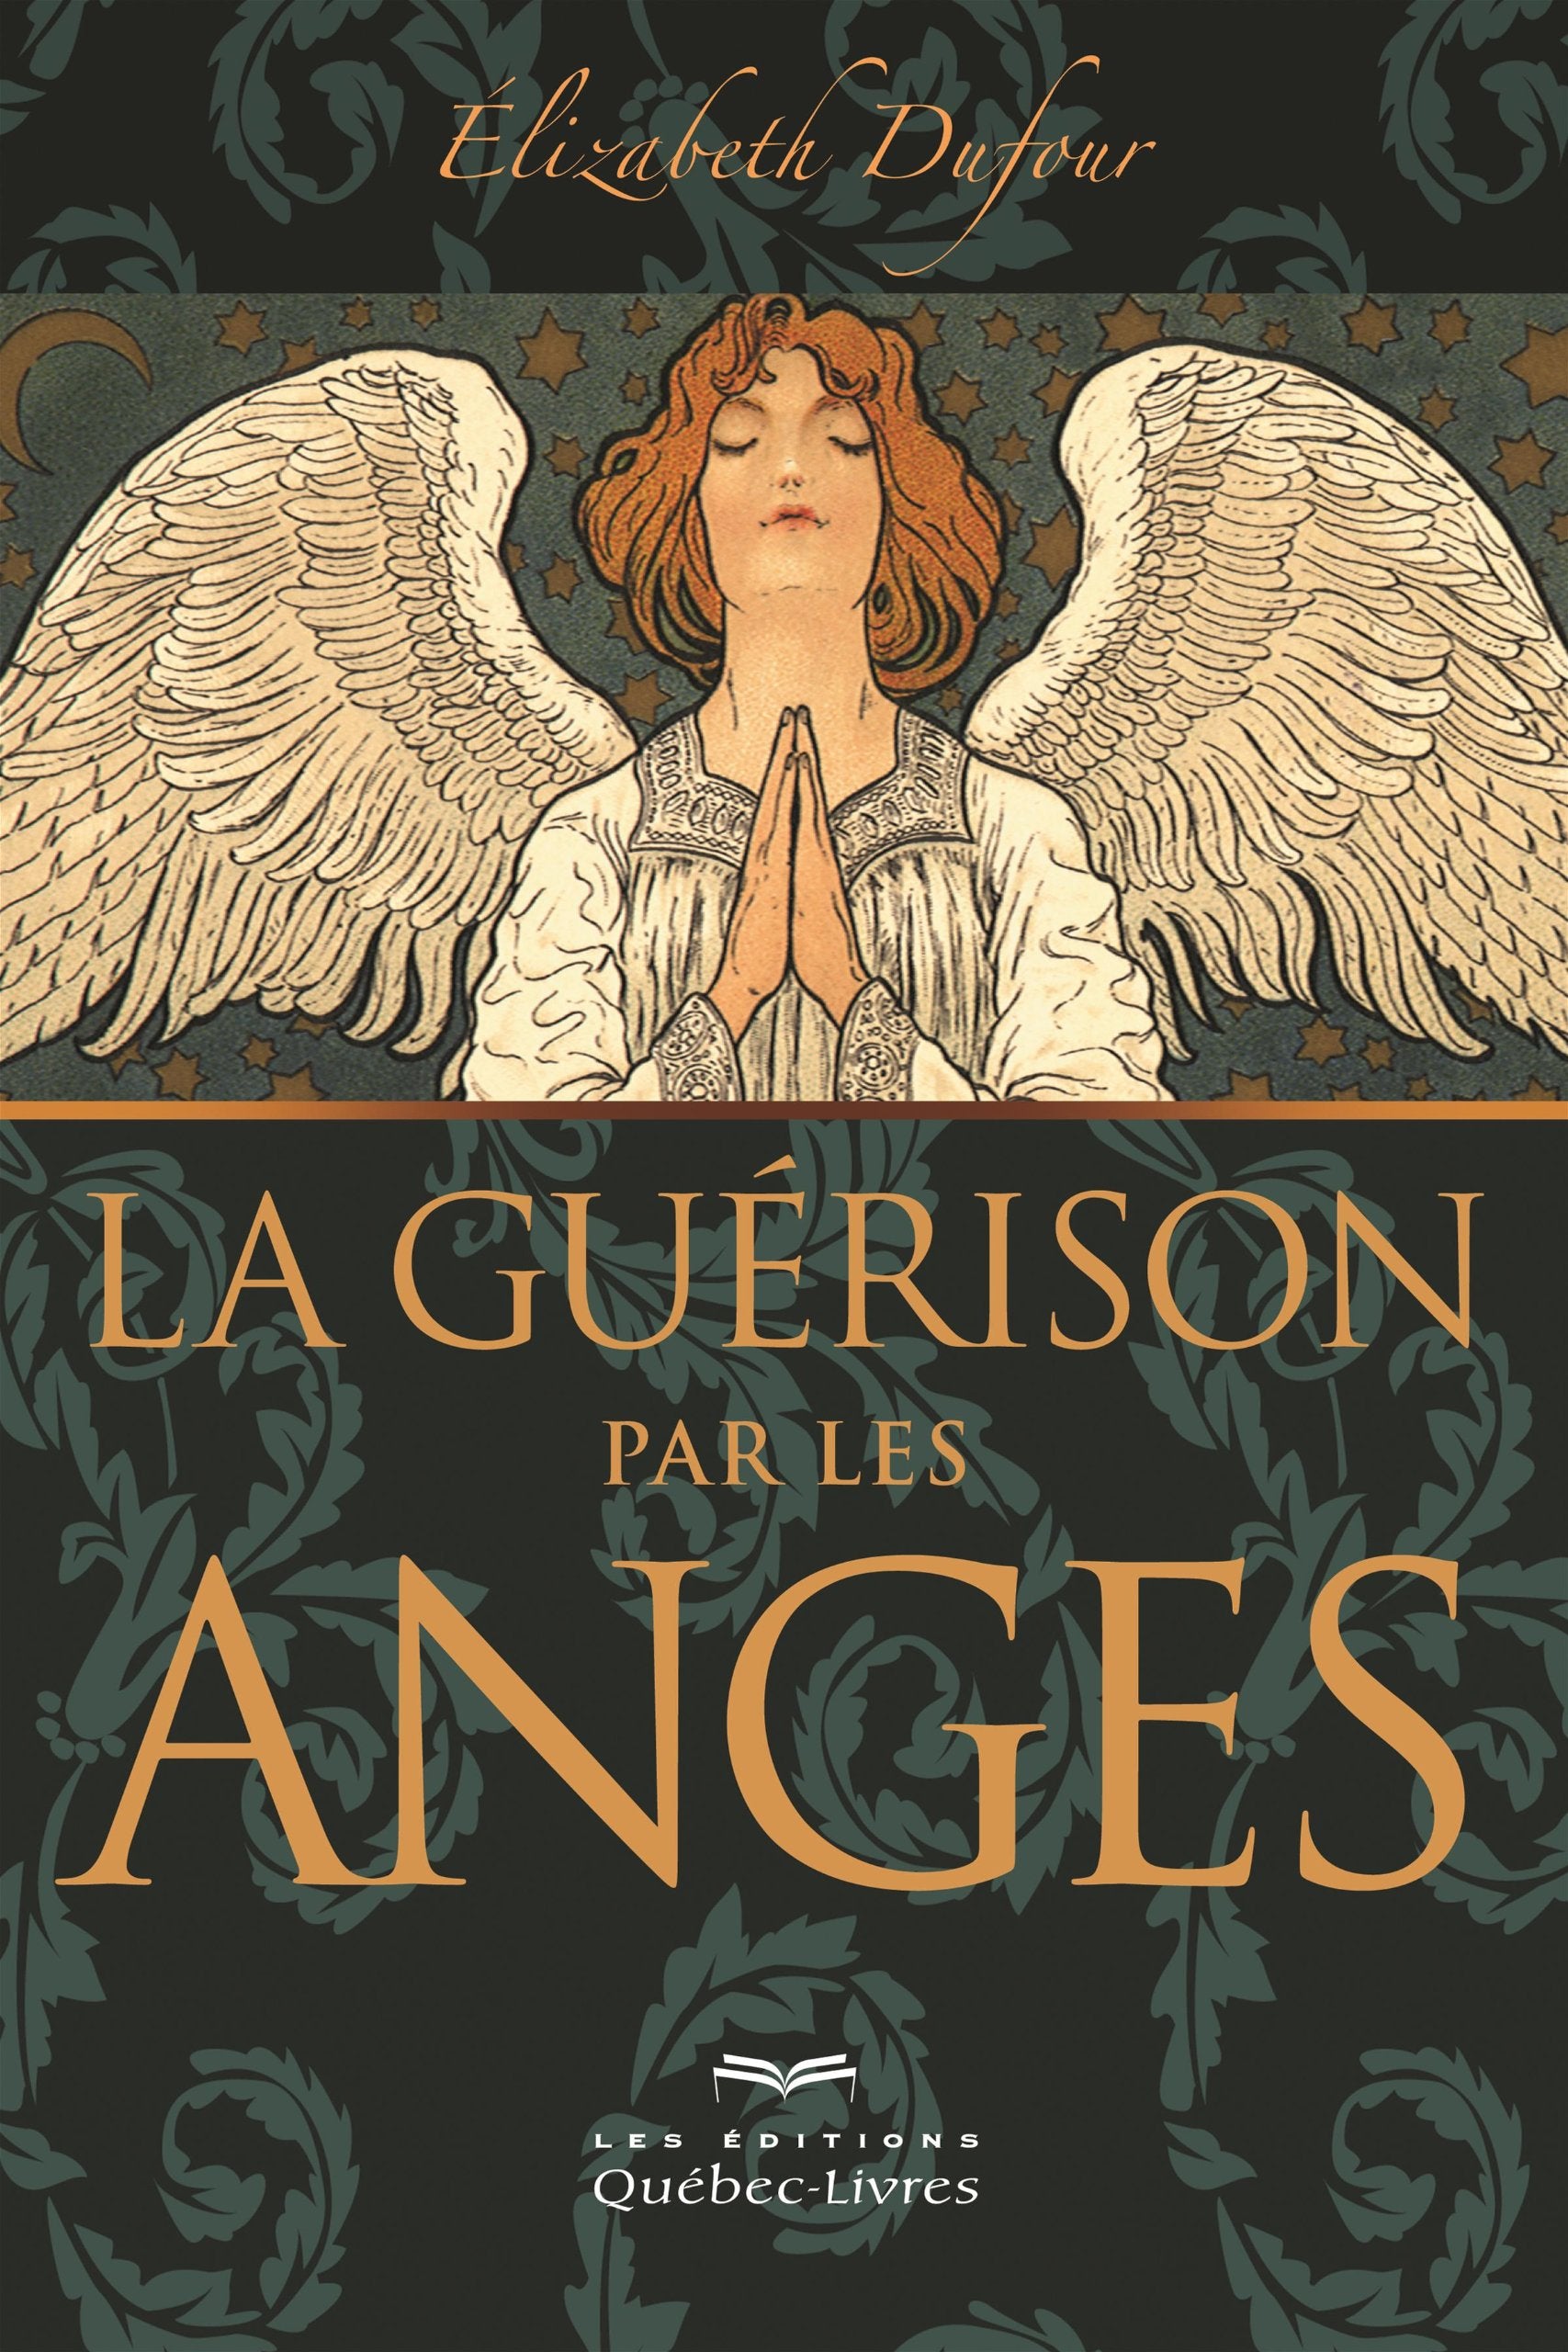 Livre ISBN 2764021976 La guérison par les anges (Elizabeth Dufour)